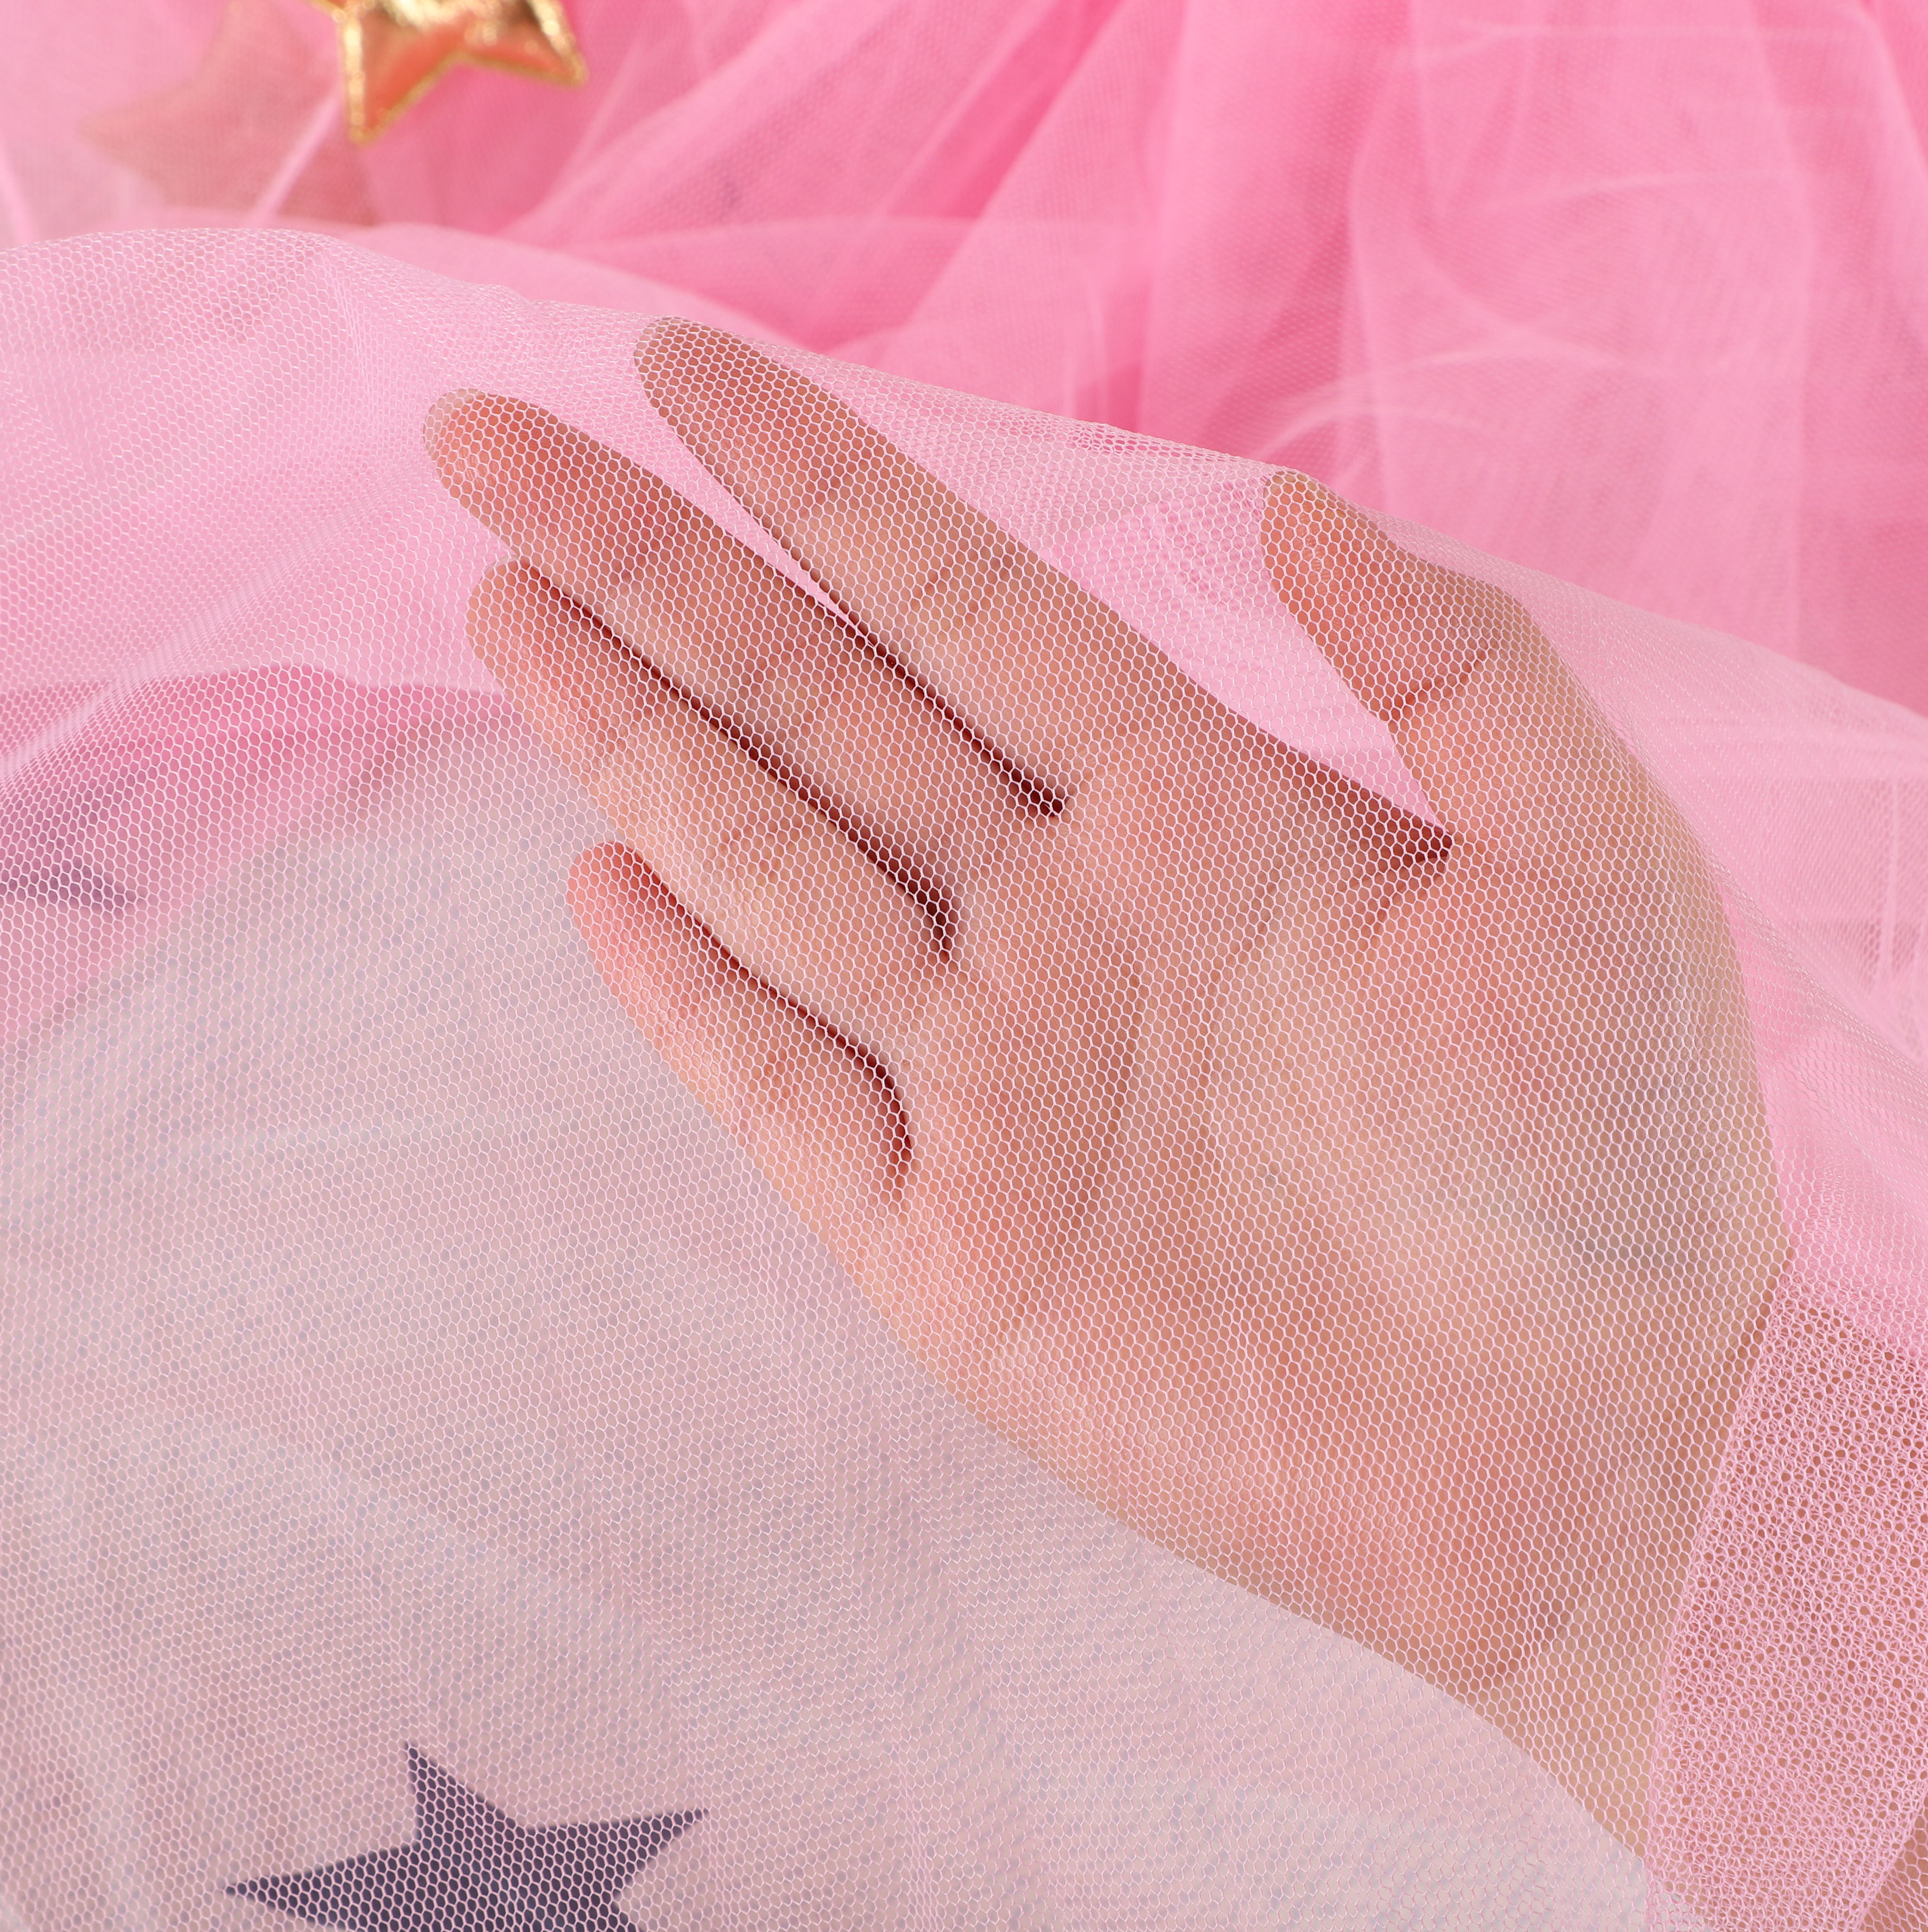 2020 venta caliente estilo princesa Gloden estrella decoración rosa mosquitera colgante